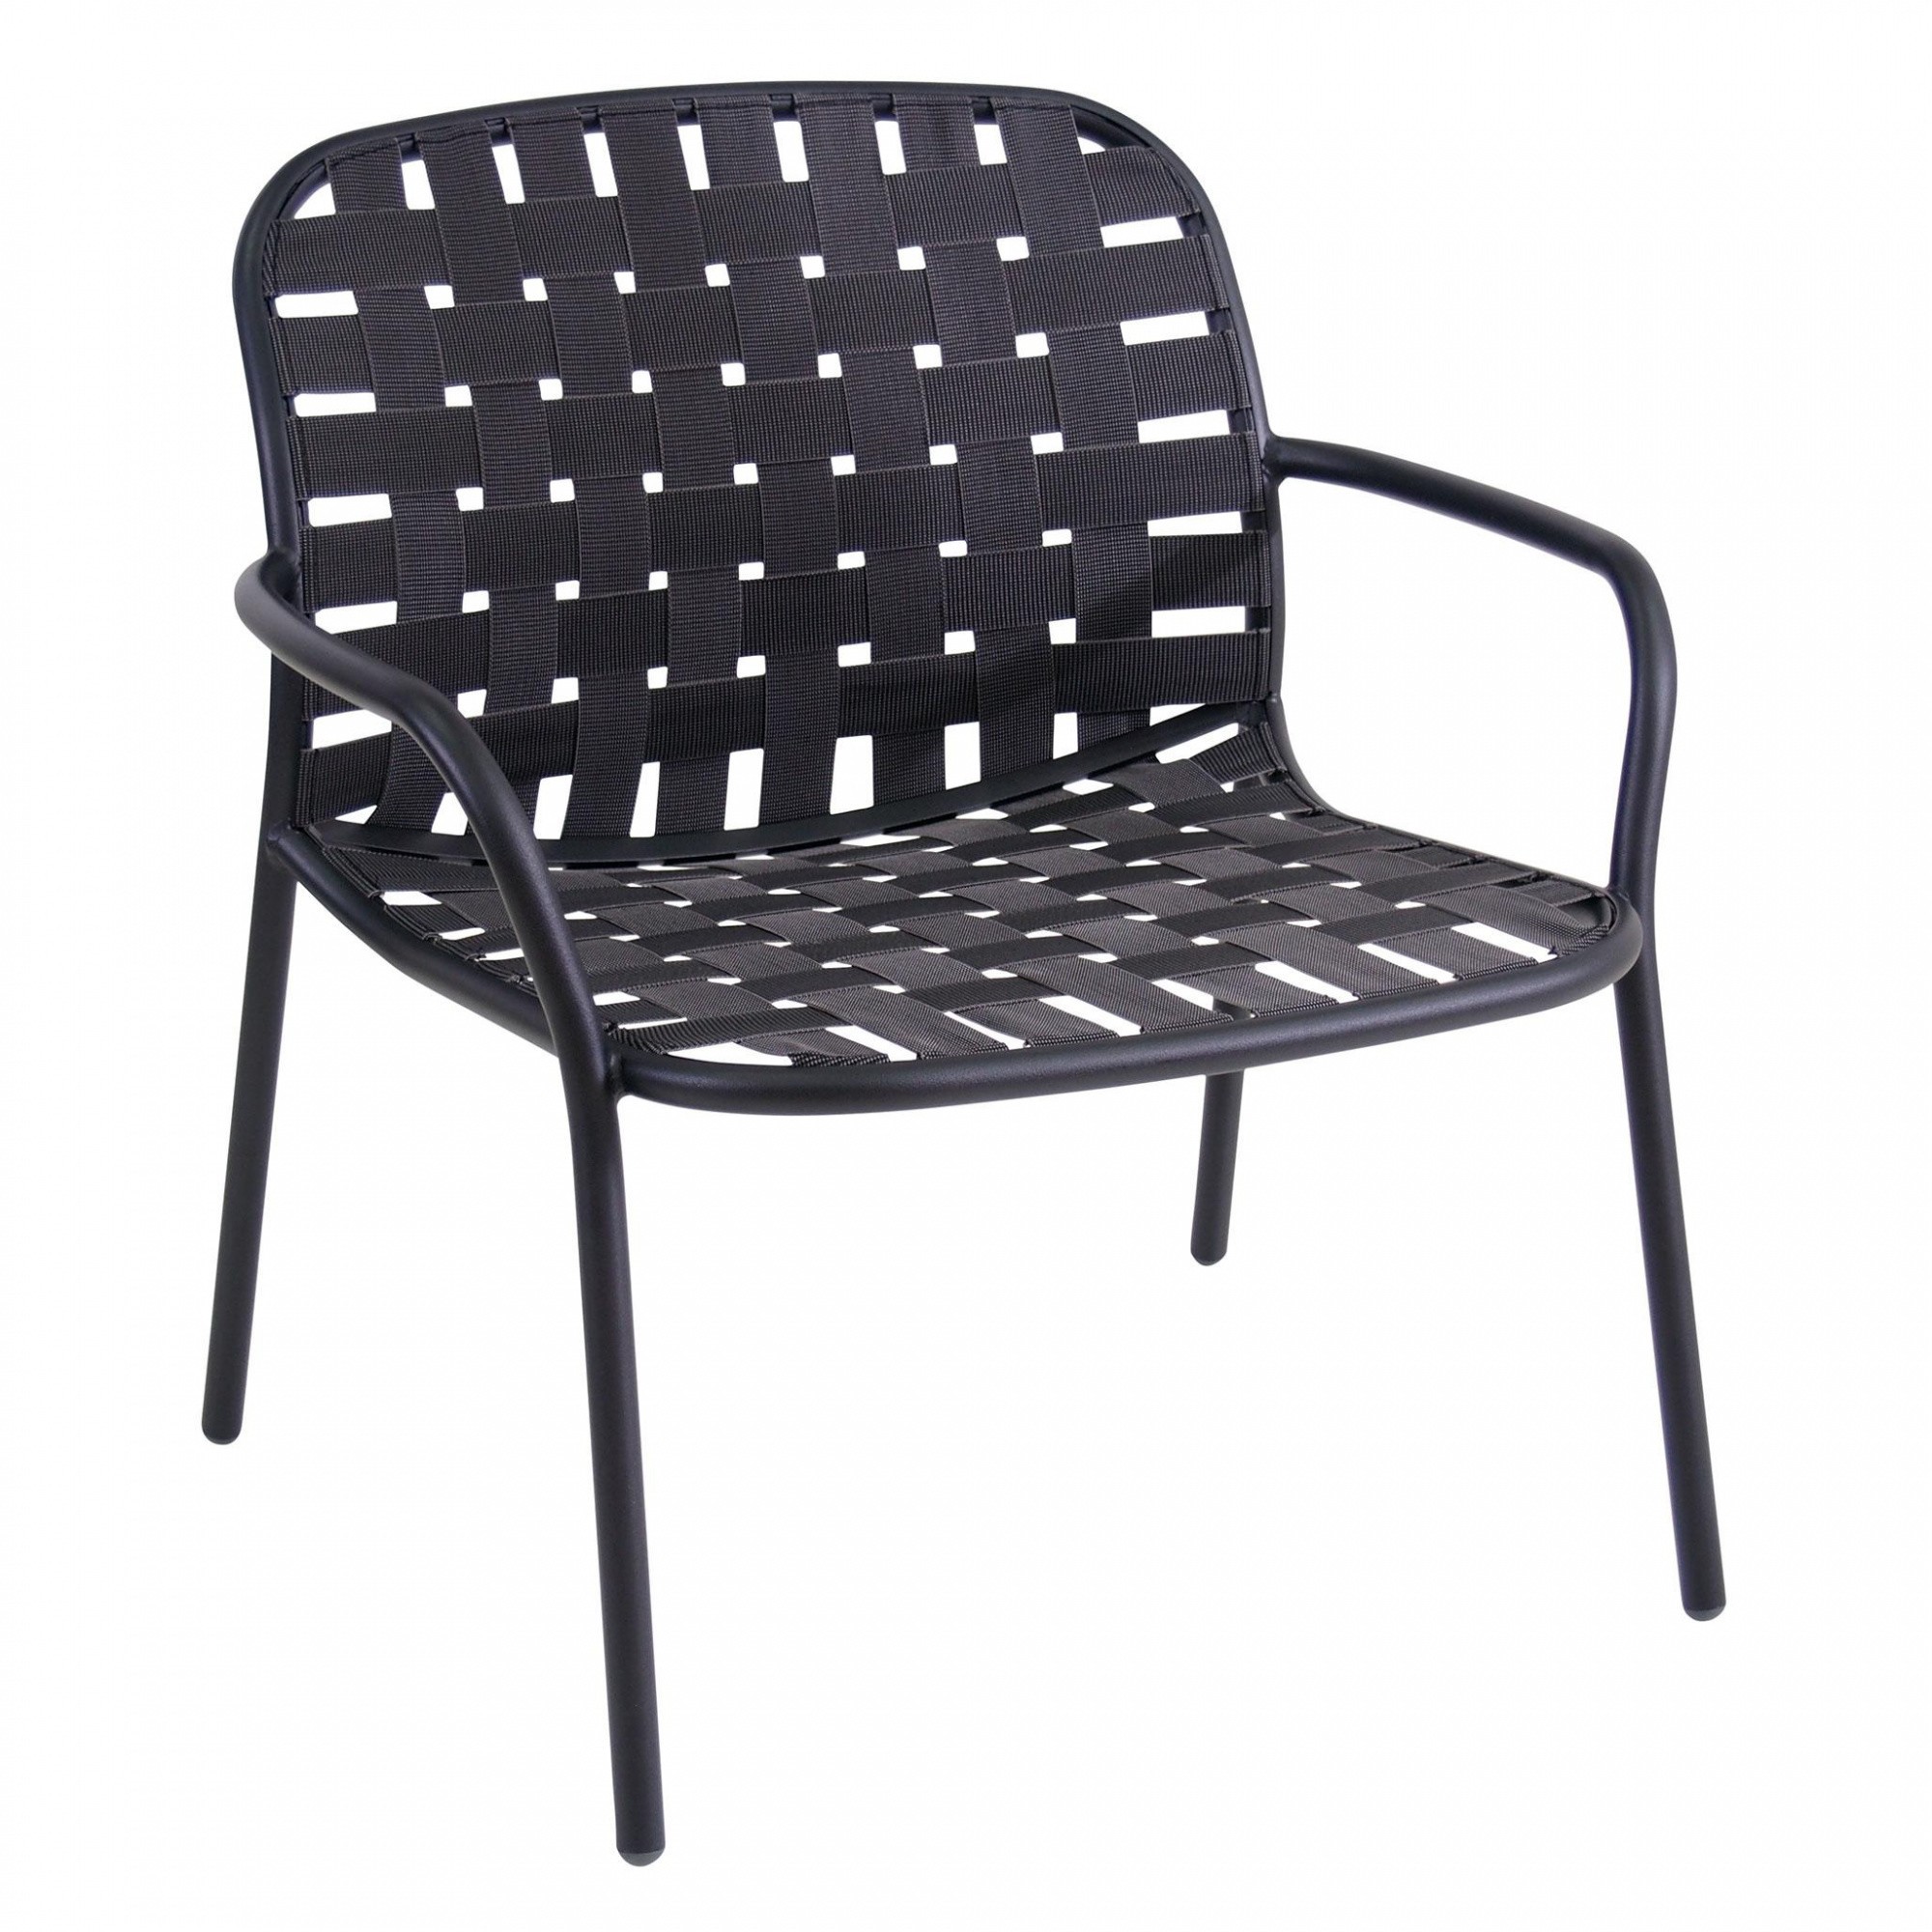 Garten Shop Inspirierend Yard Garden Lounge Chair